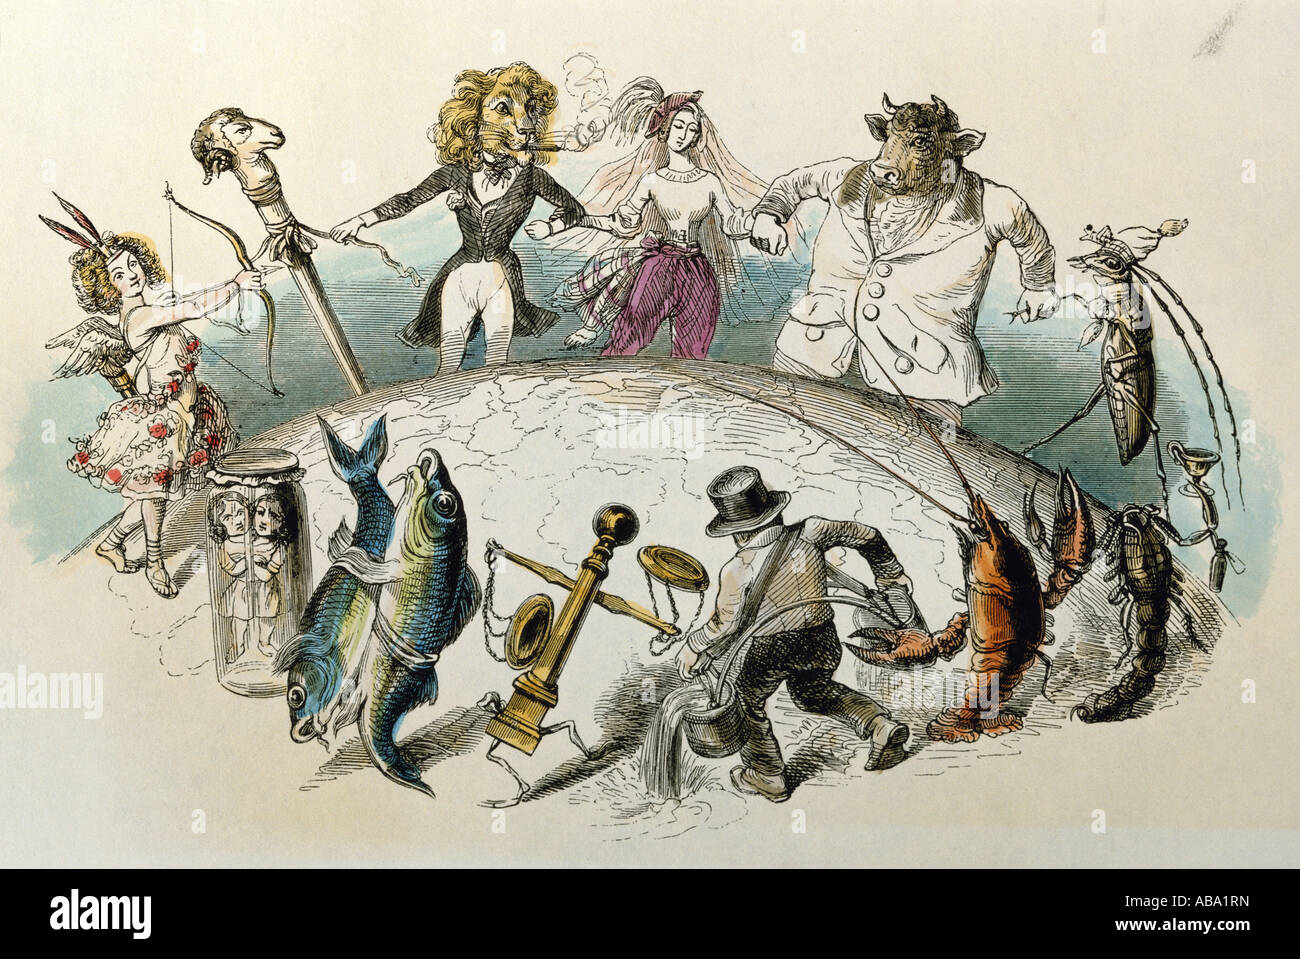 Astrologie, signes du zodiaque, caricature, 'Le zodiaque dans une danse ronde à travers le monde', gravure colorée de von Grandville, 'les etoiles animes', Paris, 1847, collection privée, , Banque D'Images